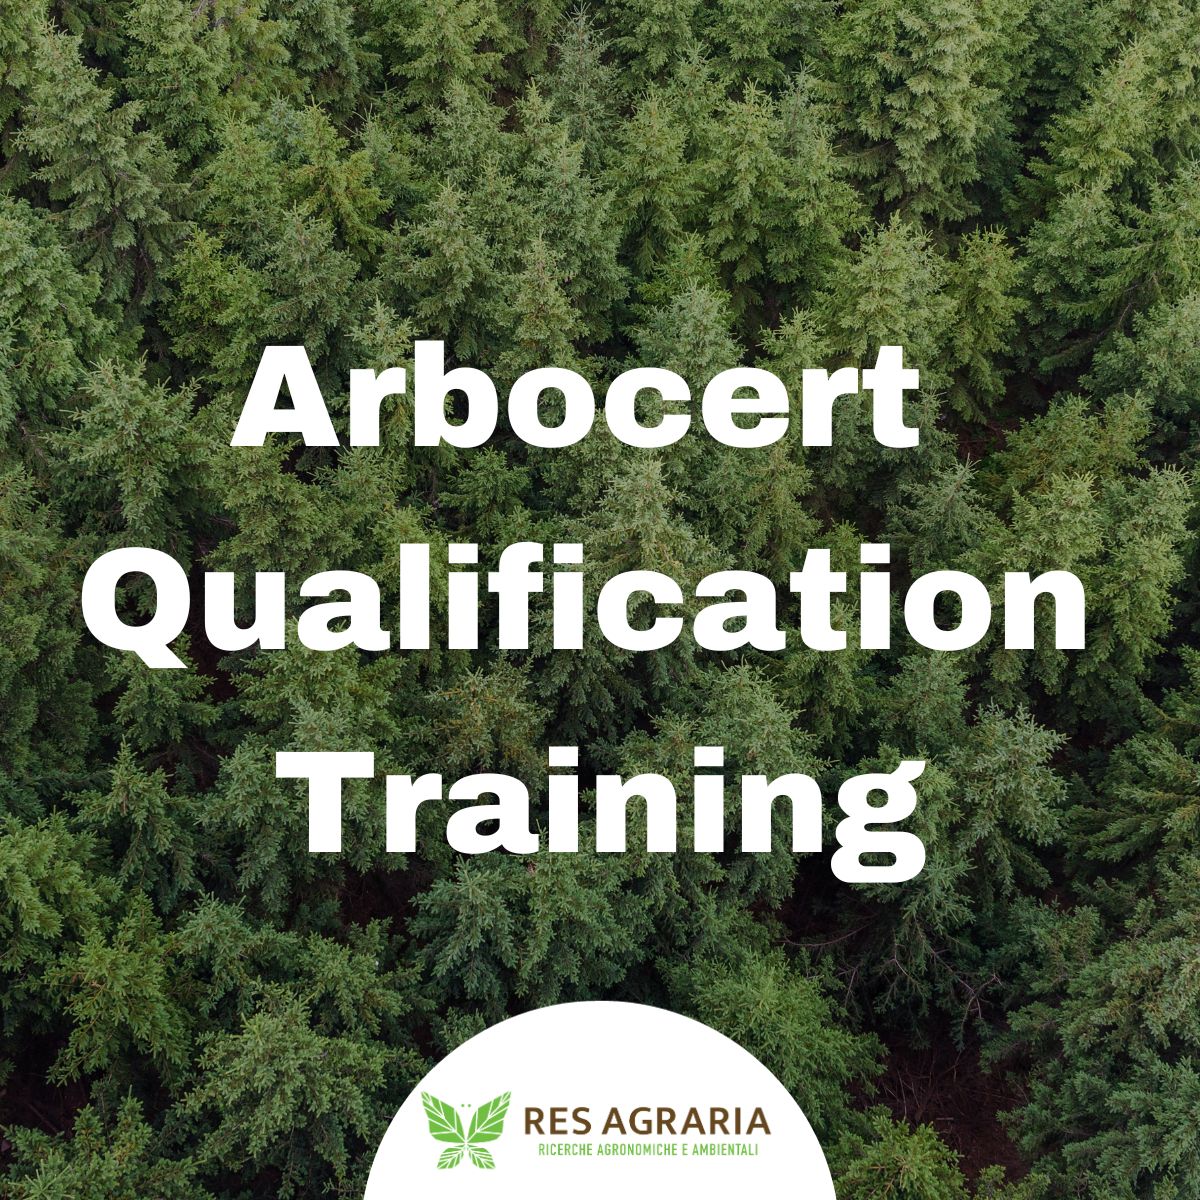 Arbocert Qualification Training